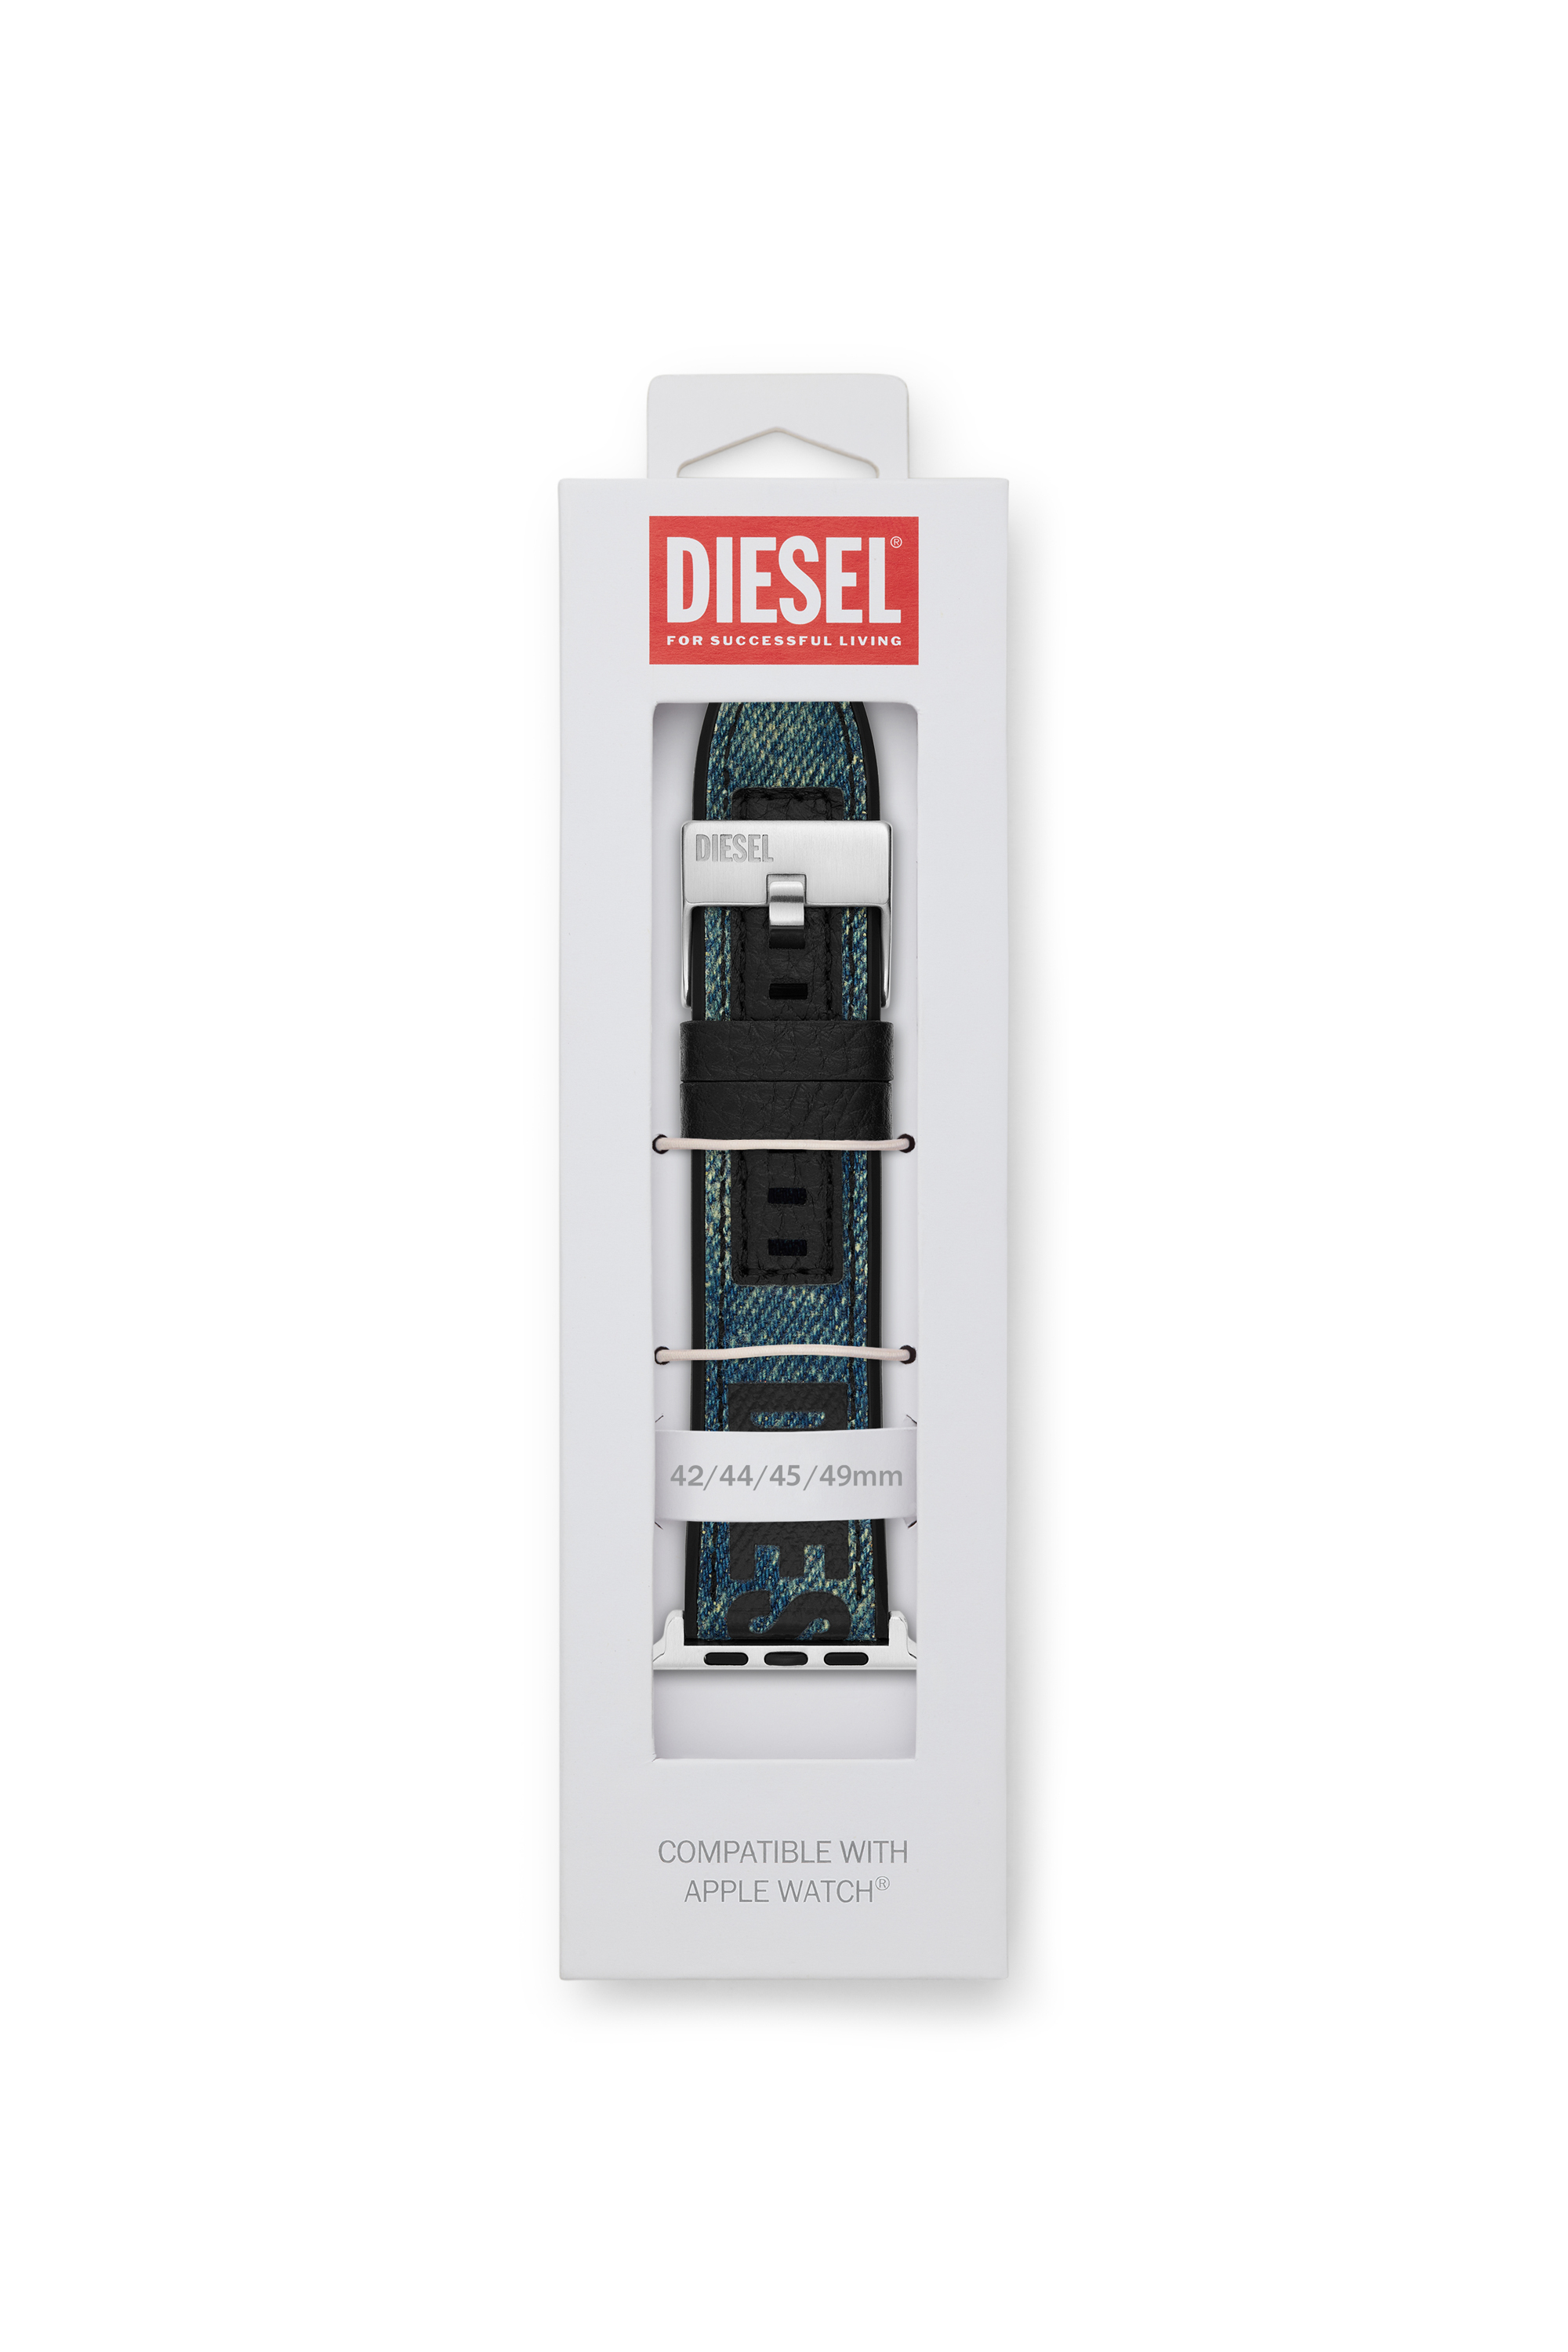 Diesel - DSS0016, Bleu - Image 2